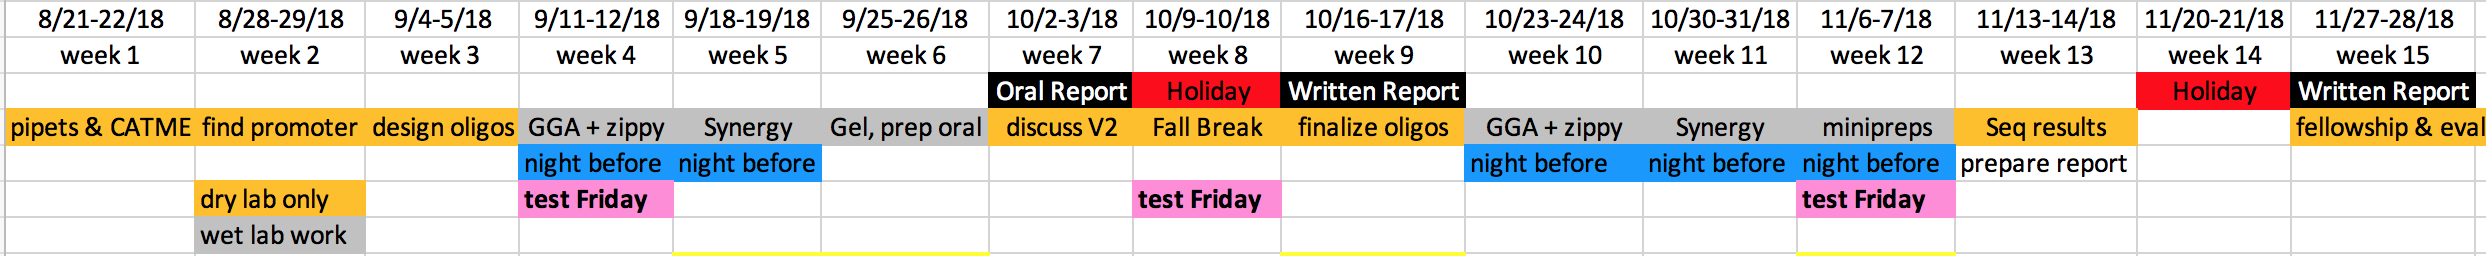 schedule F18